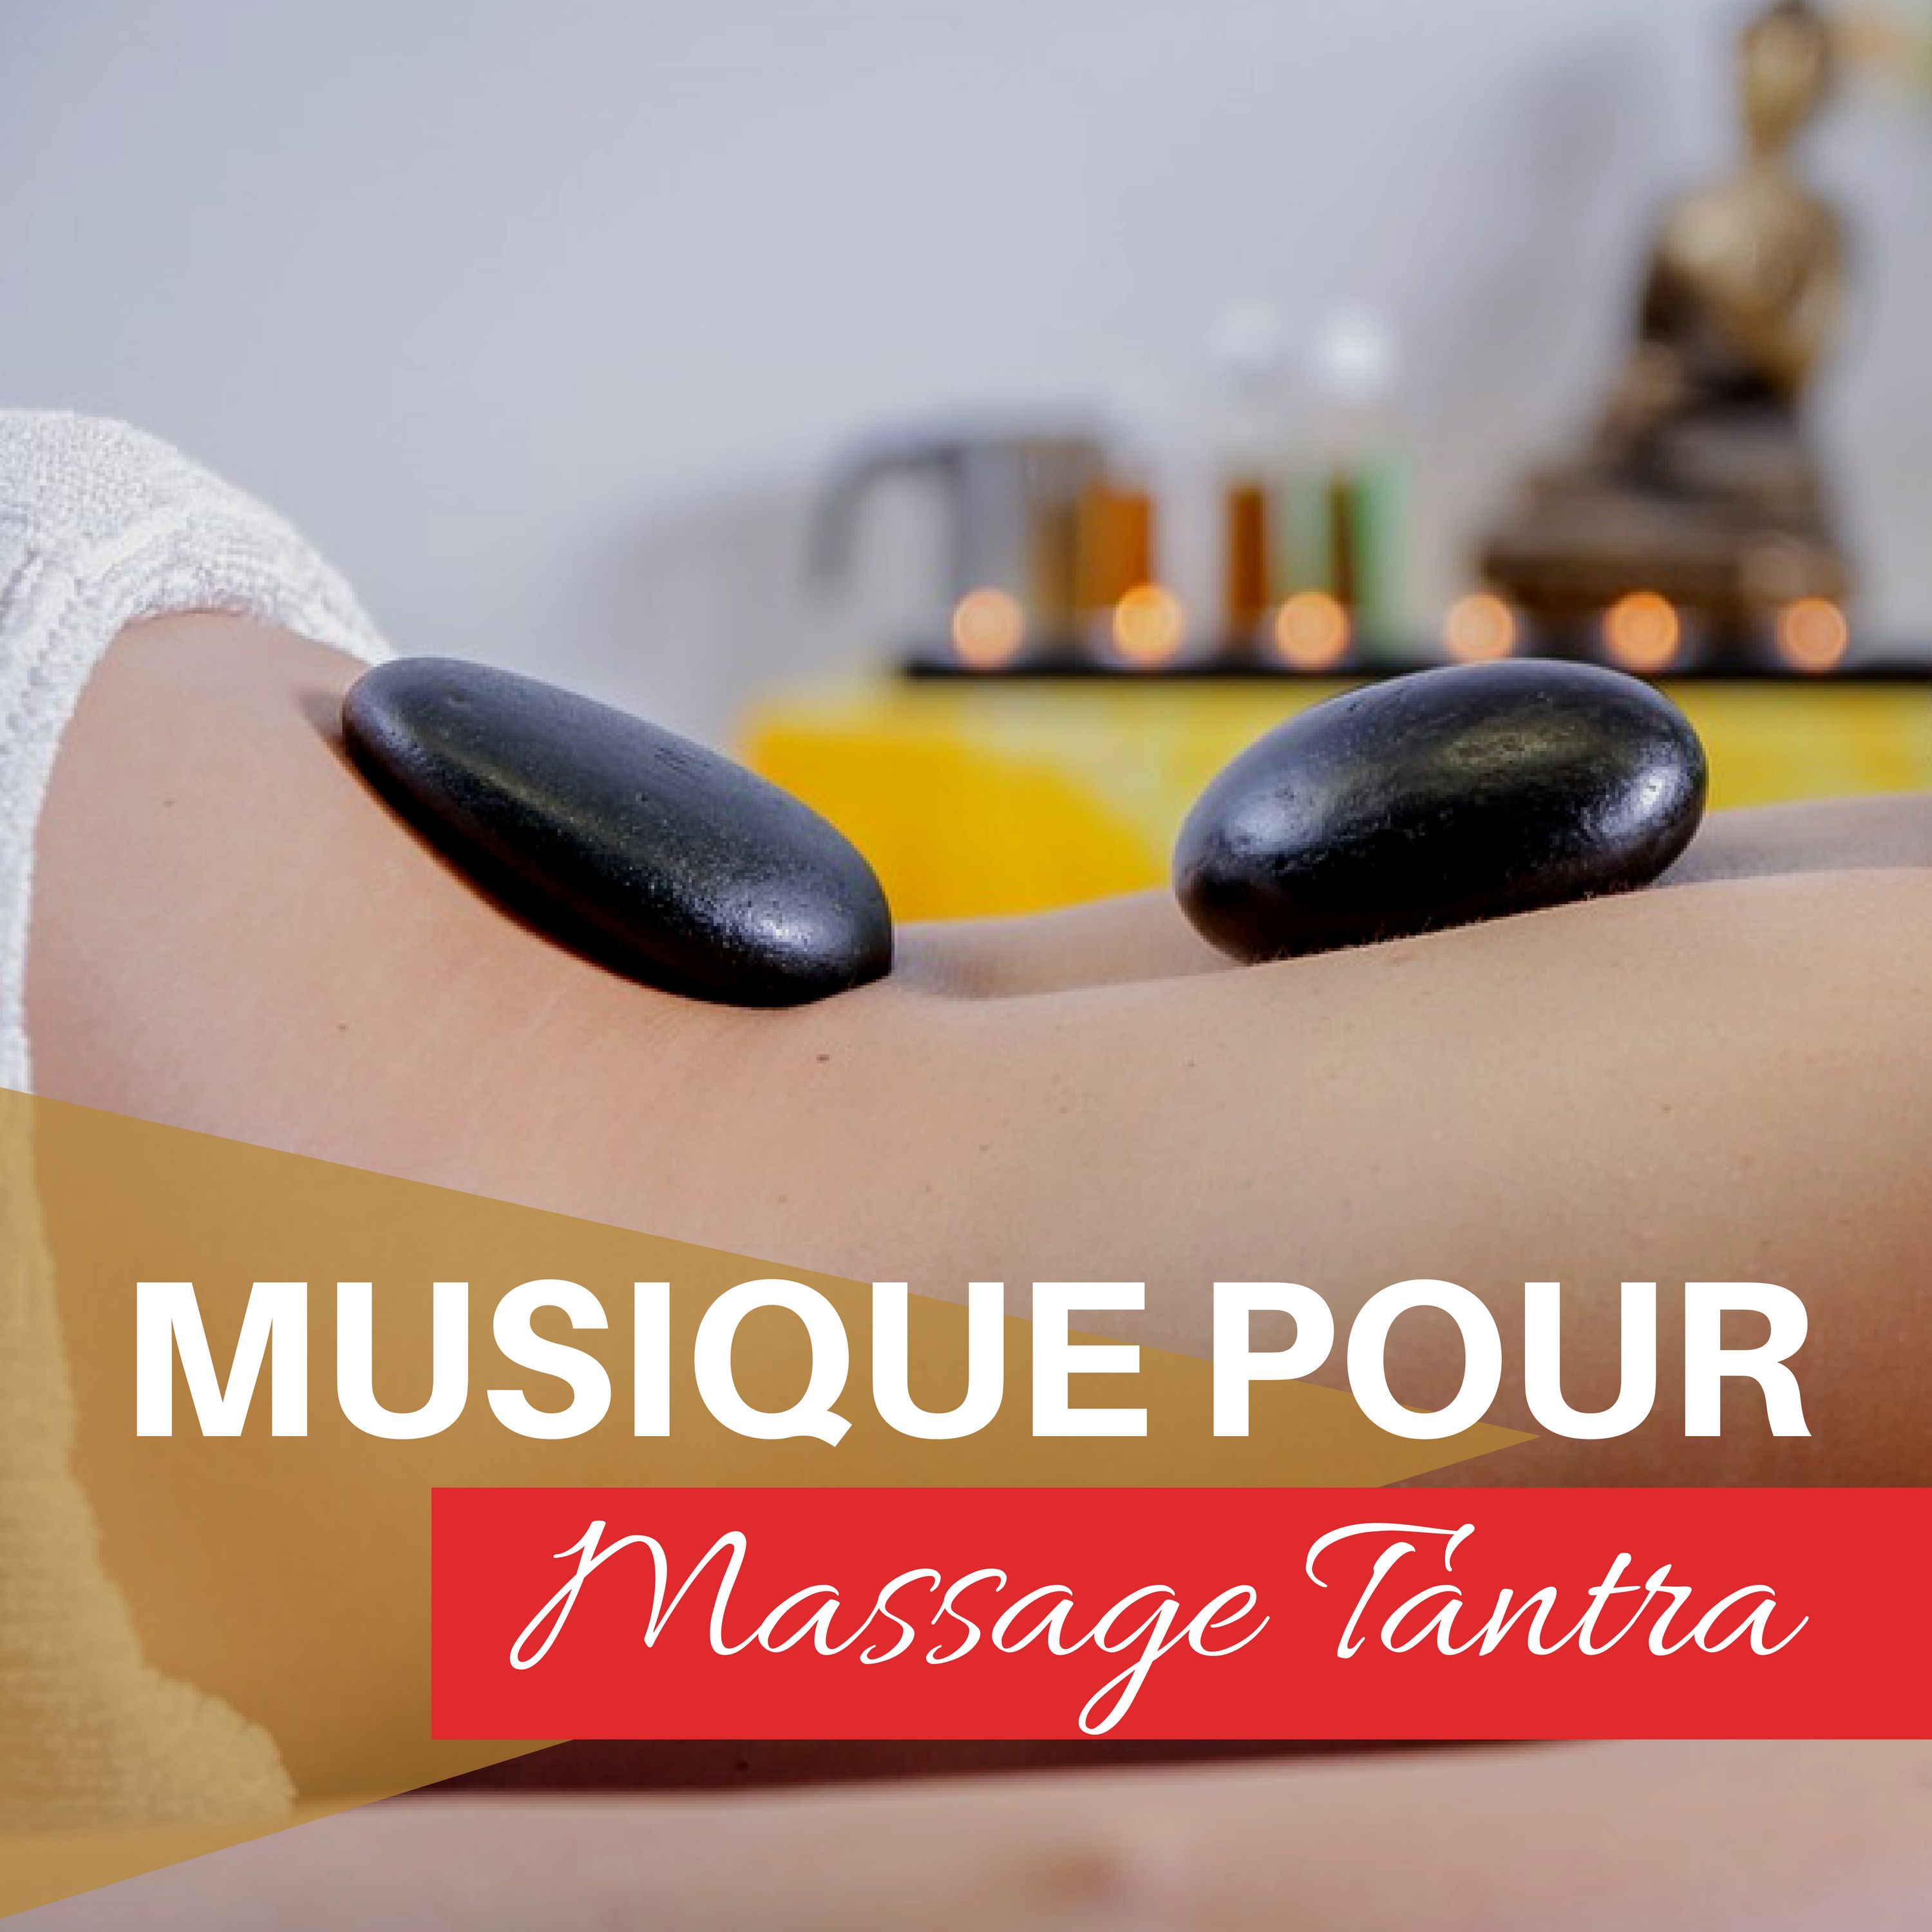 Musique pour Massage Tantra - Sons sensuels de la nature et de la batterie pour une relaxation profonde